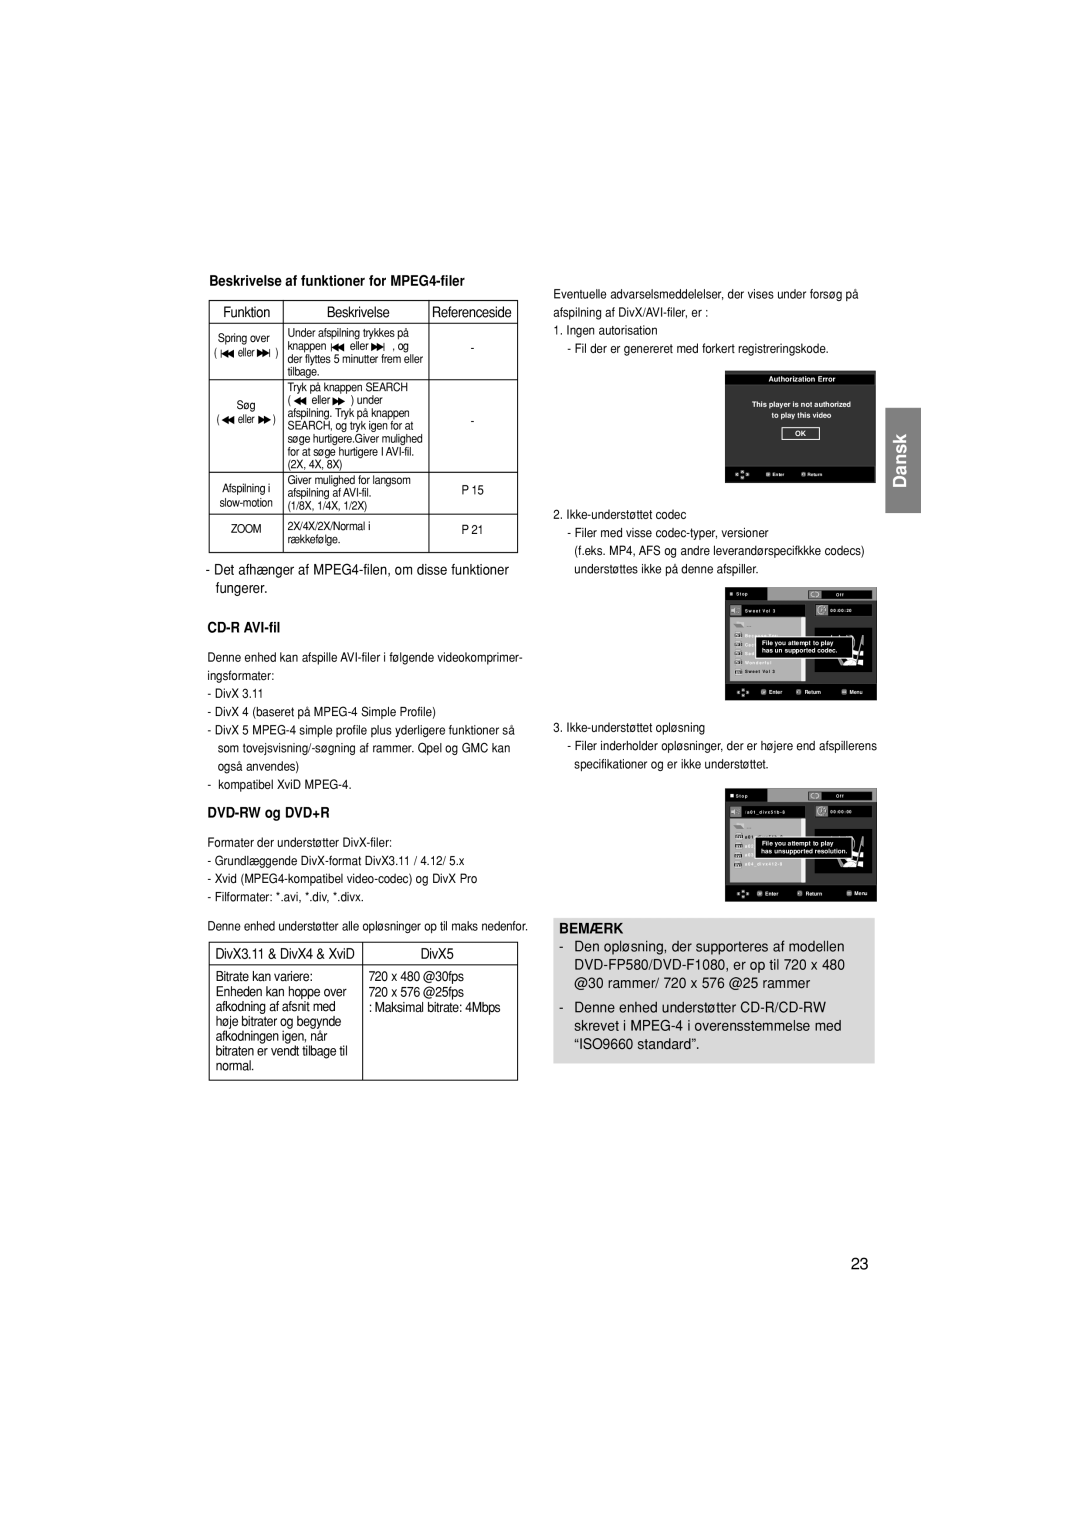 Samsung DVD-F1080W/XEE, DVD-F1080/XEE manual Beskrivelse af funktioner for MPEG4-filer, CD-R AVI-fil, DVD-RW og DVD+R 